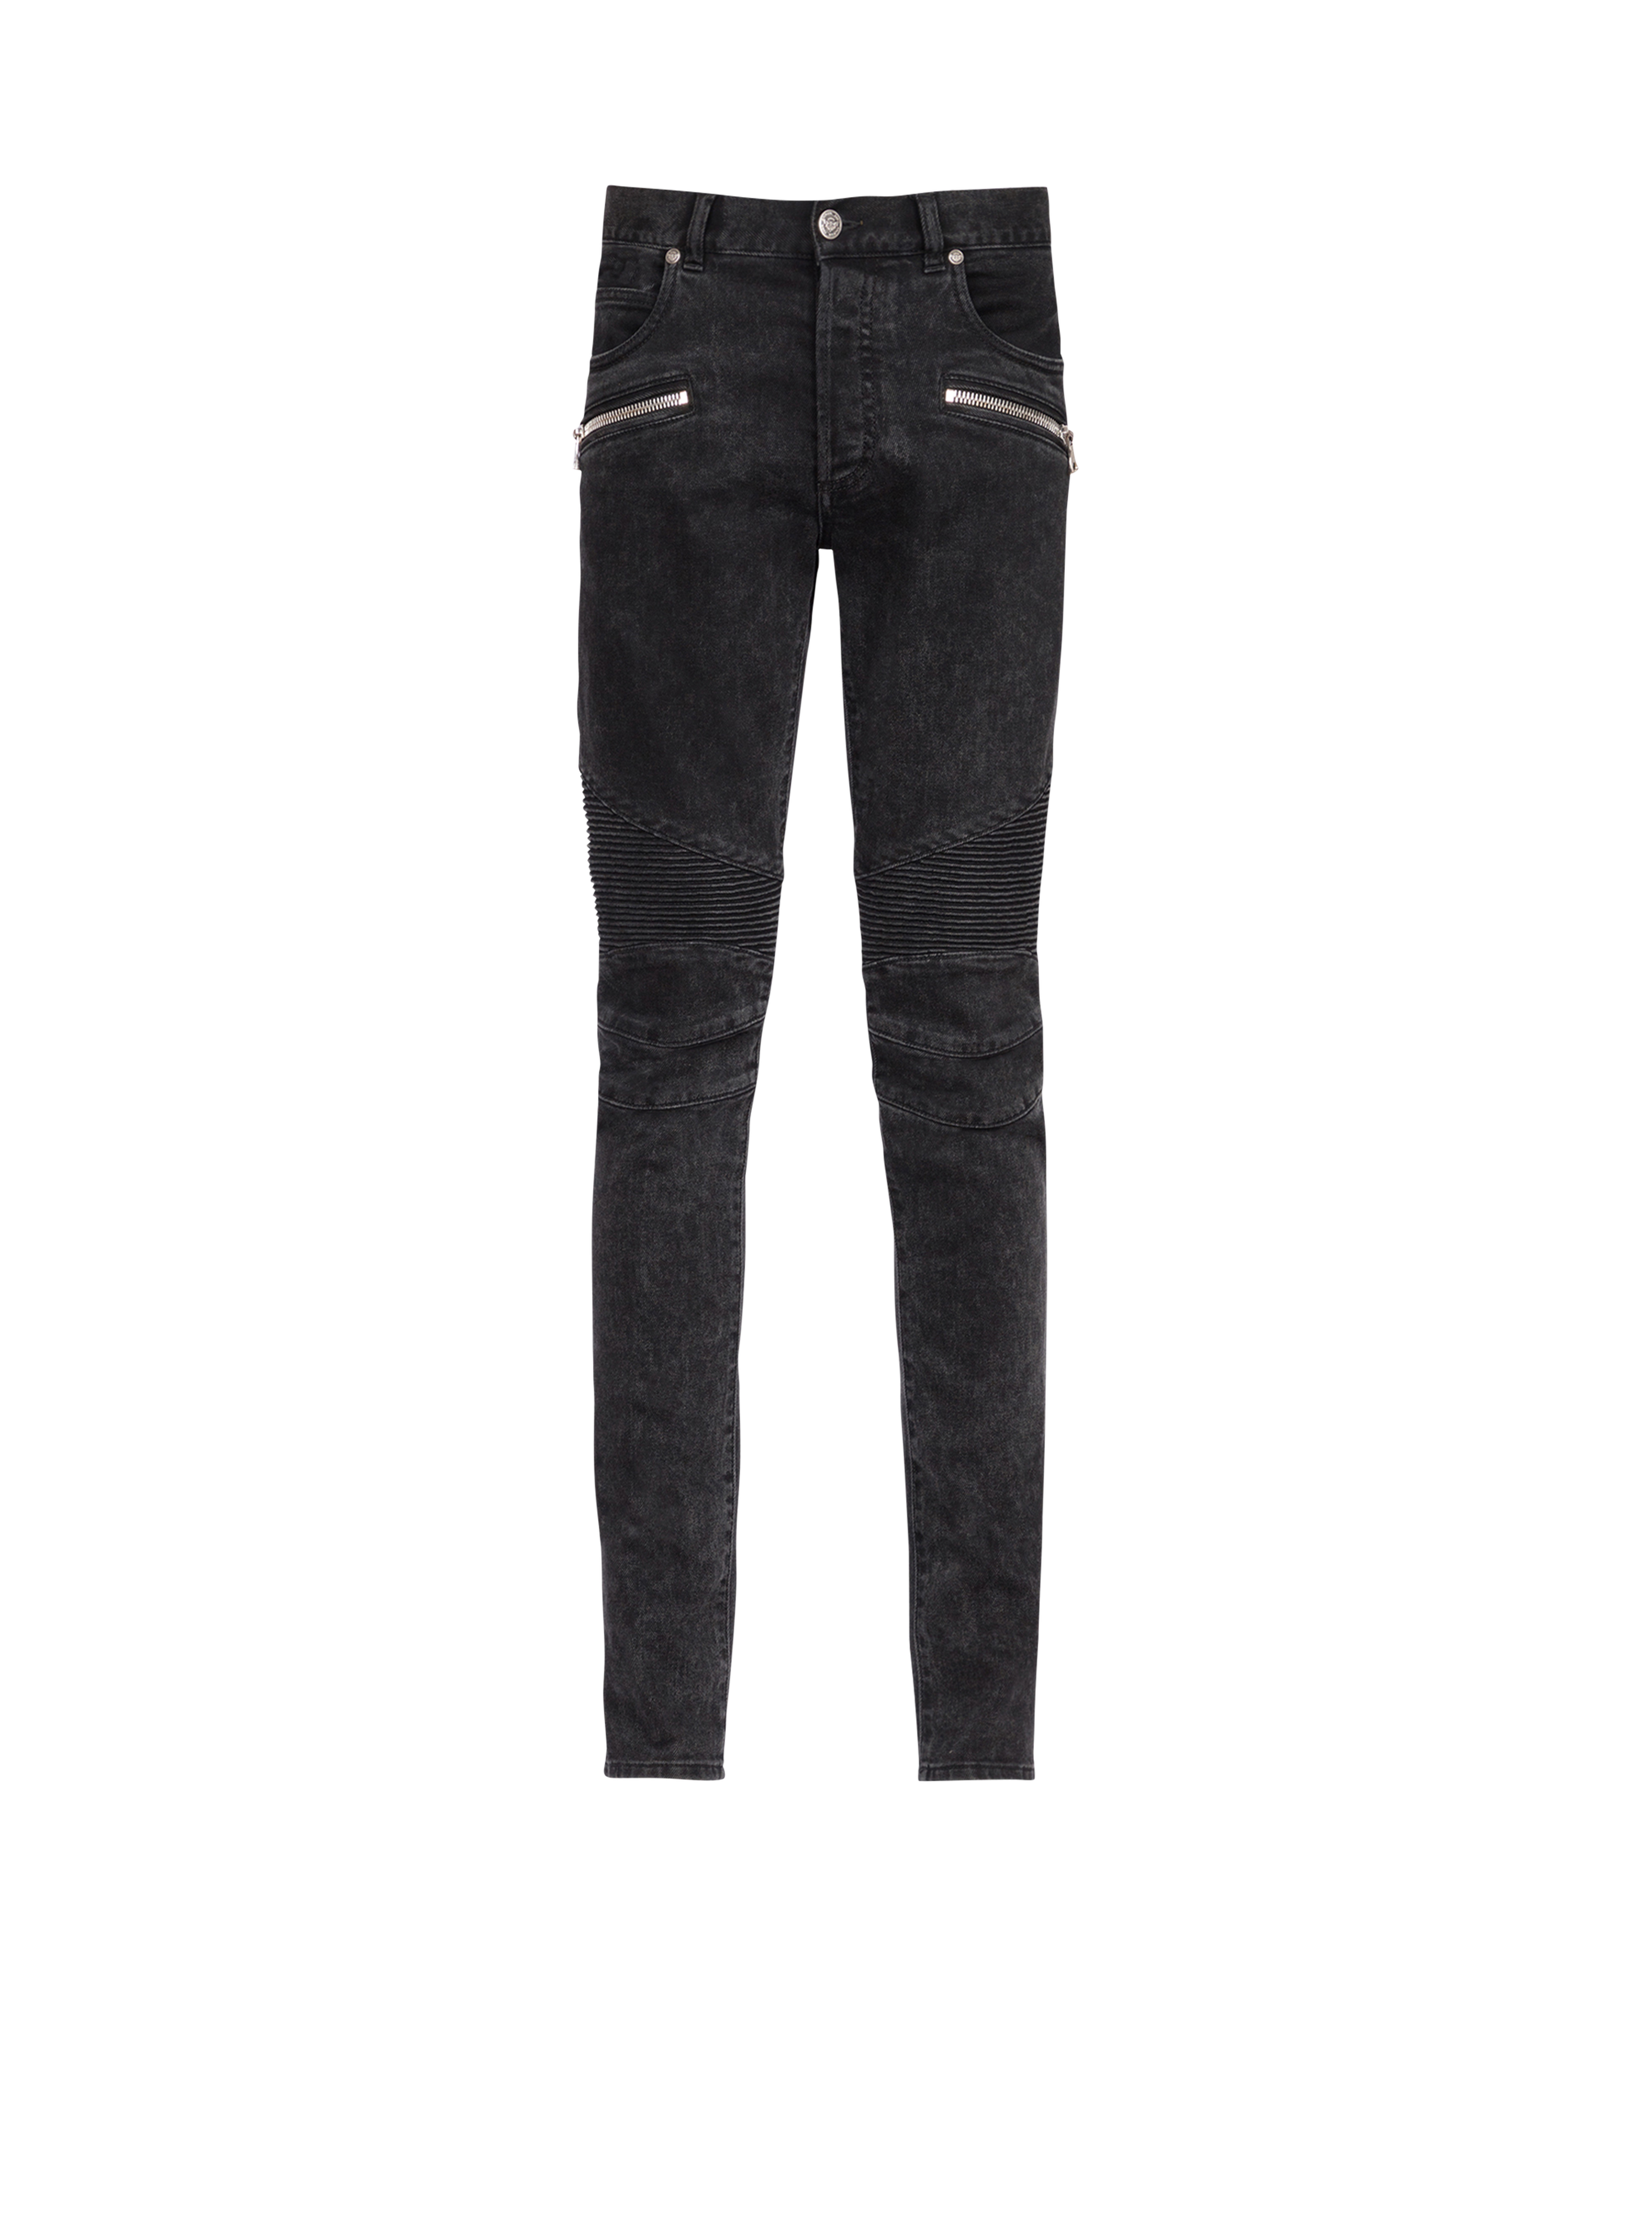 Jeans slim-fit in cotone, nero